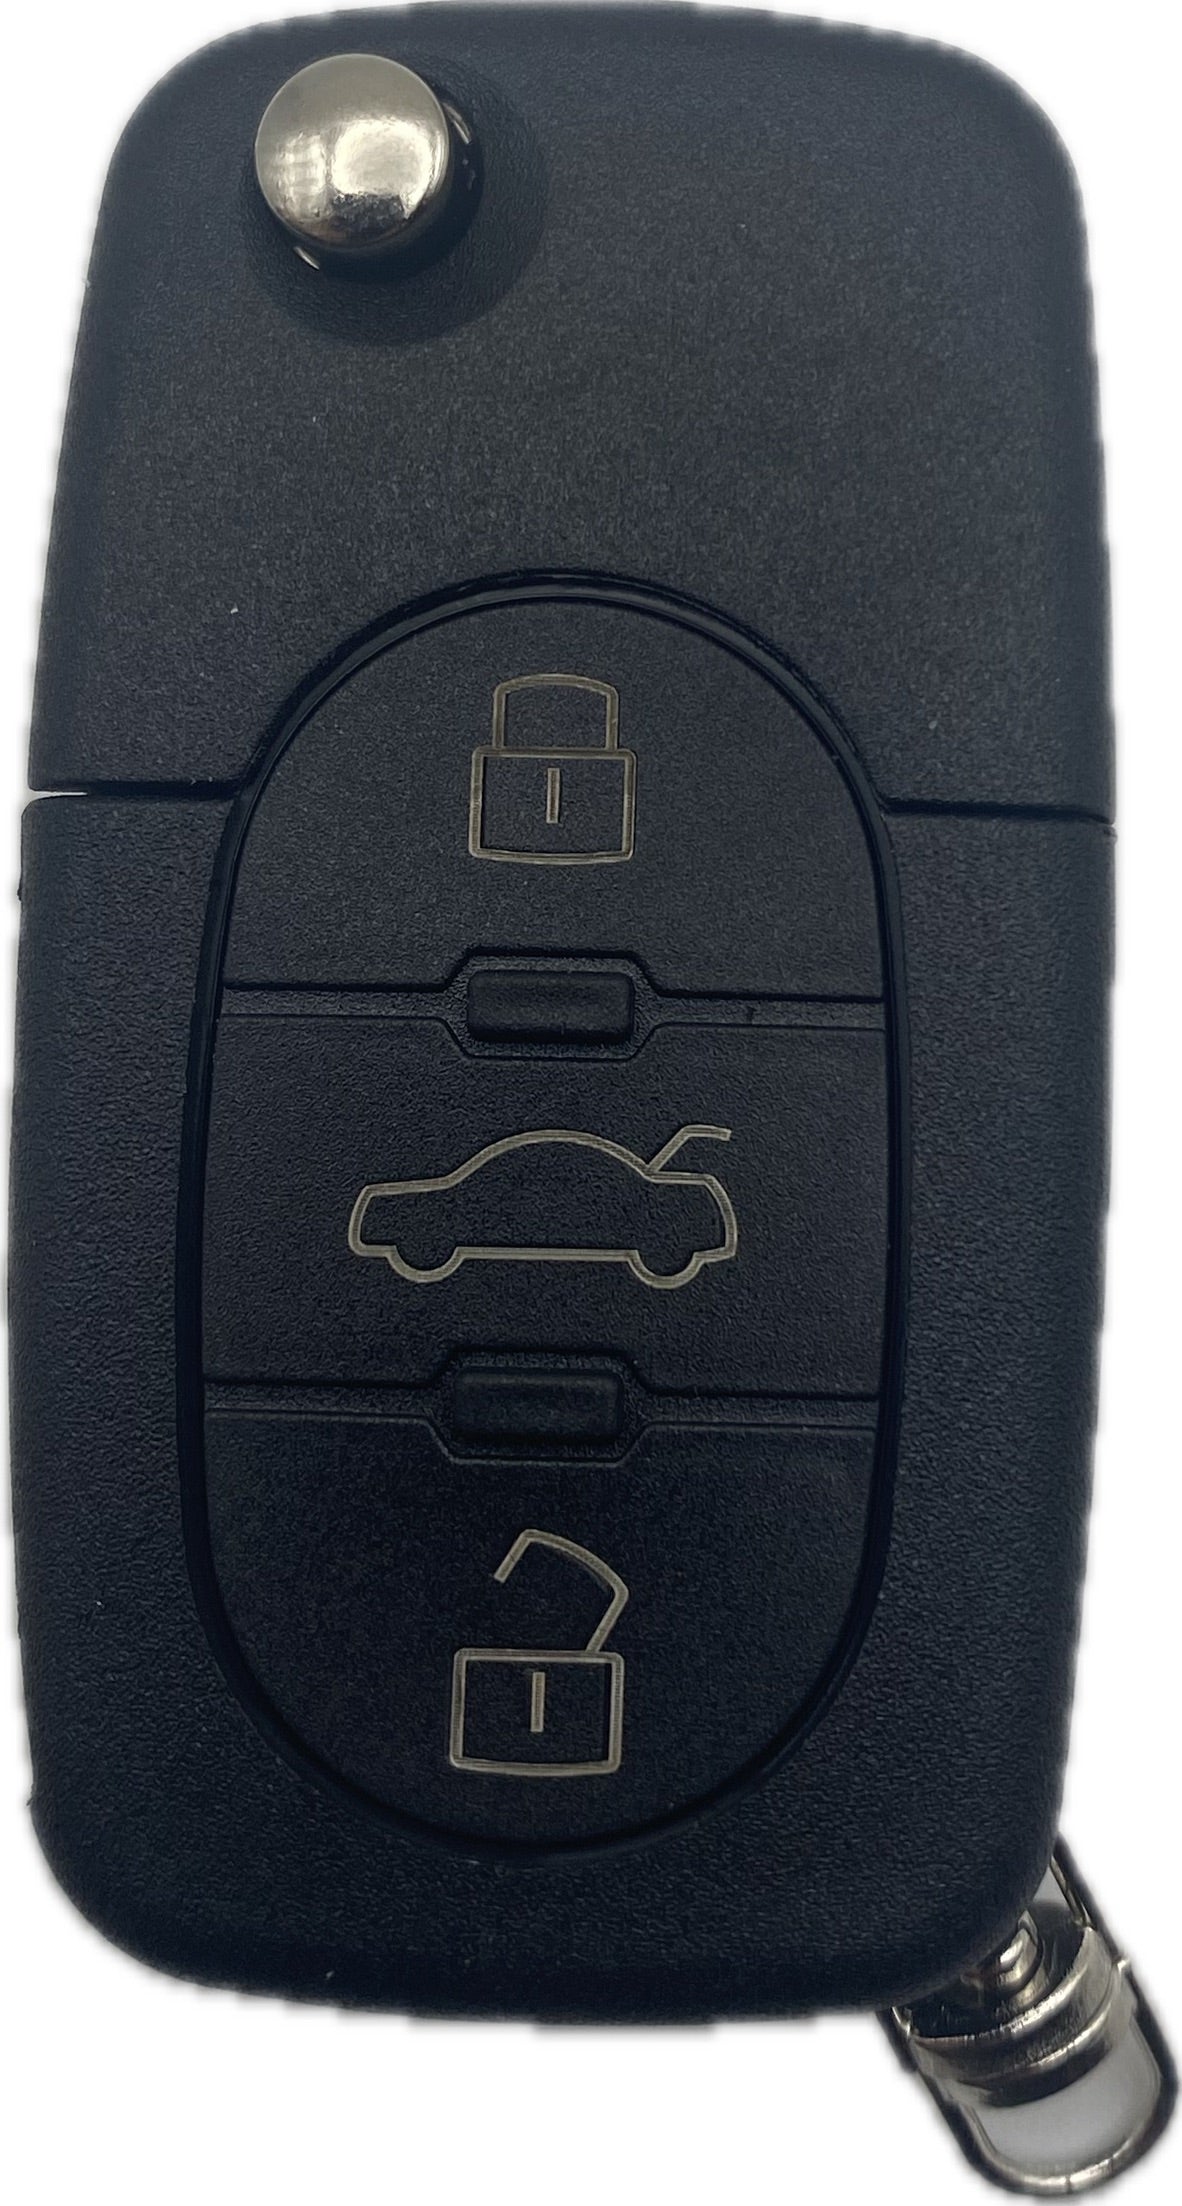 Autoschlüssel Gehäuse für Funk Klappschlüssel geeignet für ältere AUDI 2 oder 3 Taster